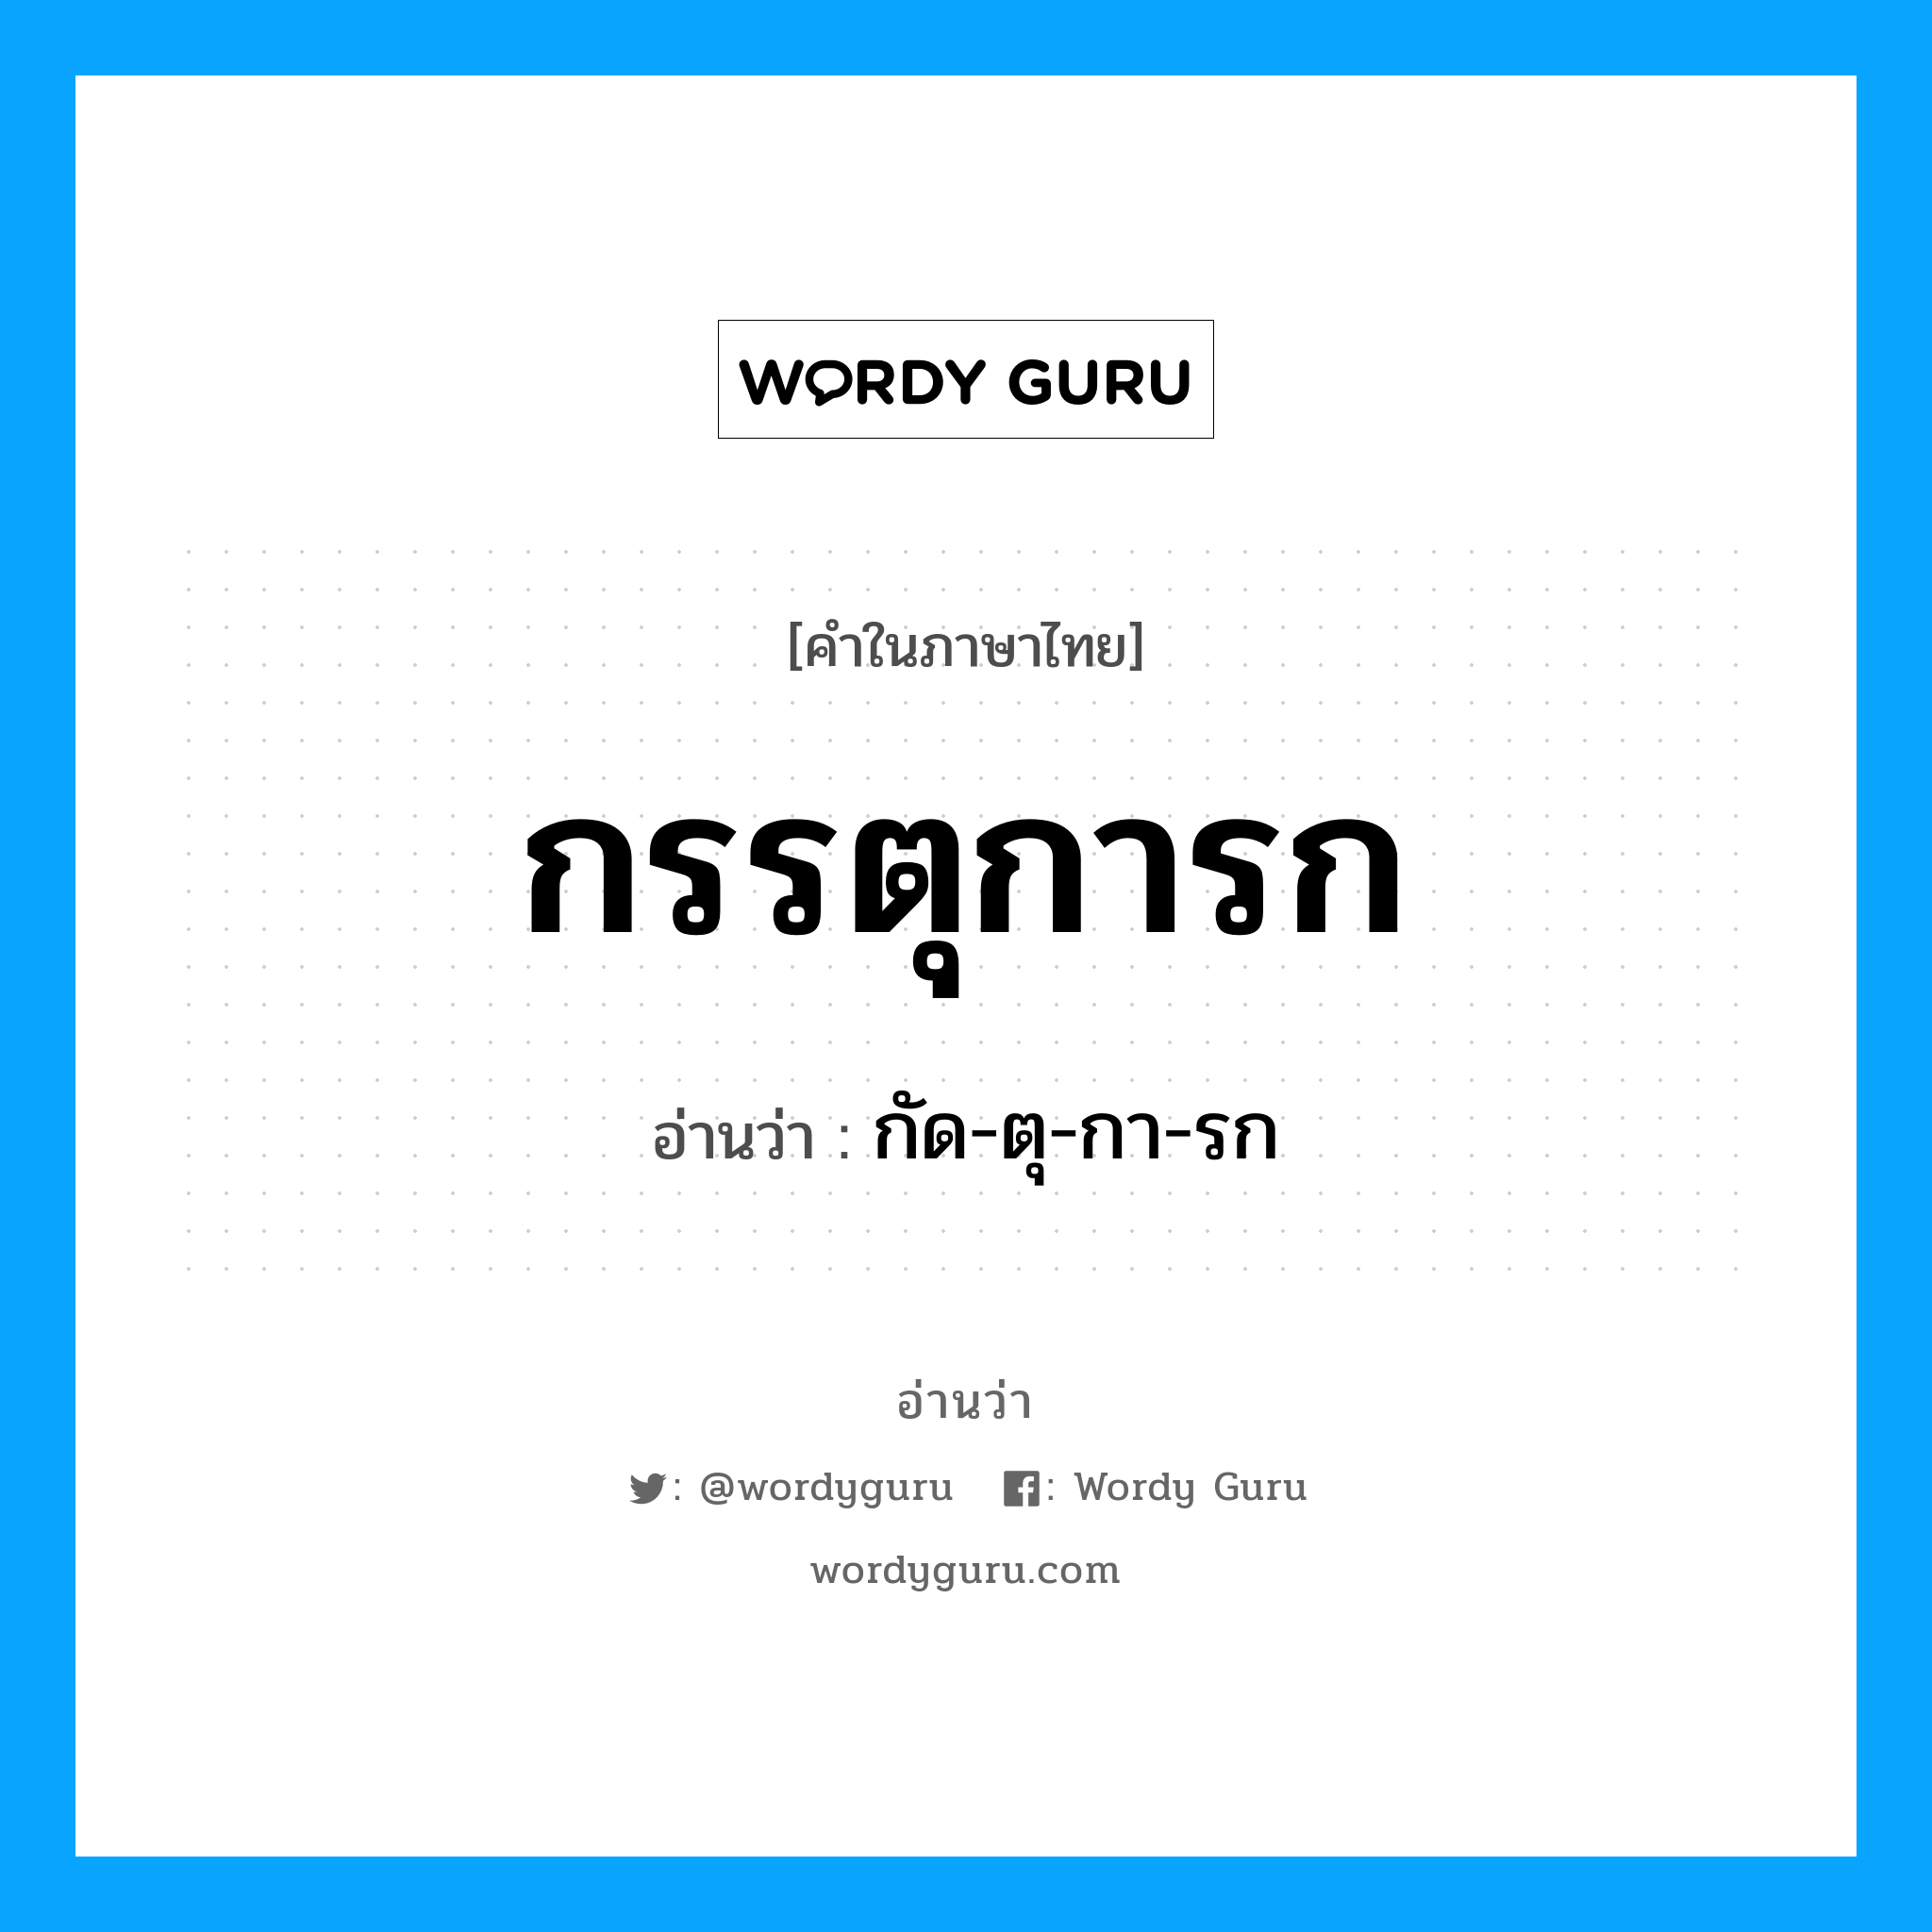 กัด-ตุ-กา-รก เป็นคำอ่านของคำไหน?, คำในภาษาไทย กัด-ตุ-กา-รก อ่านว่า กรรตุการก